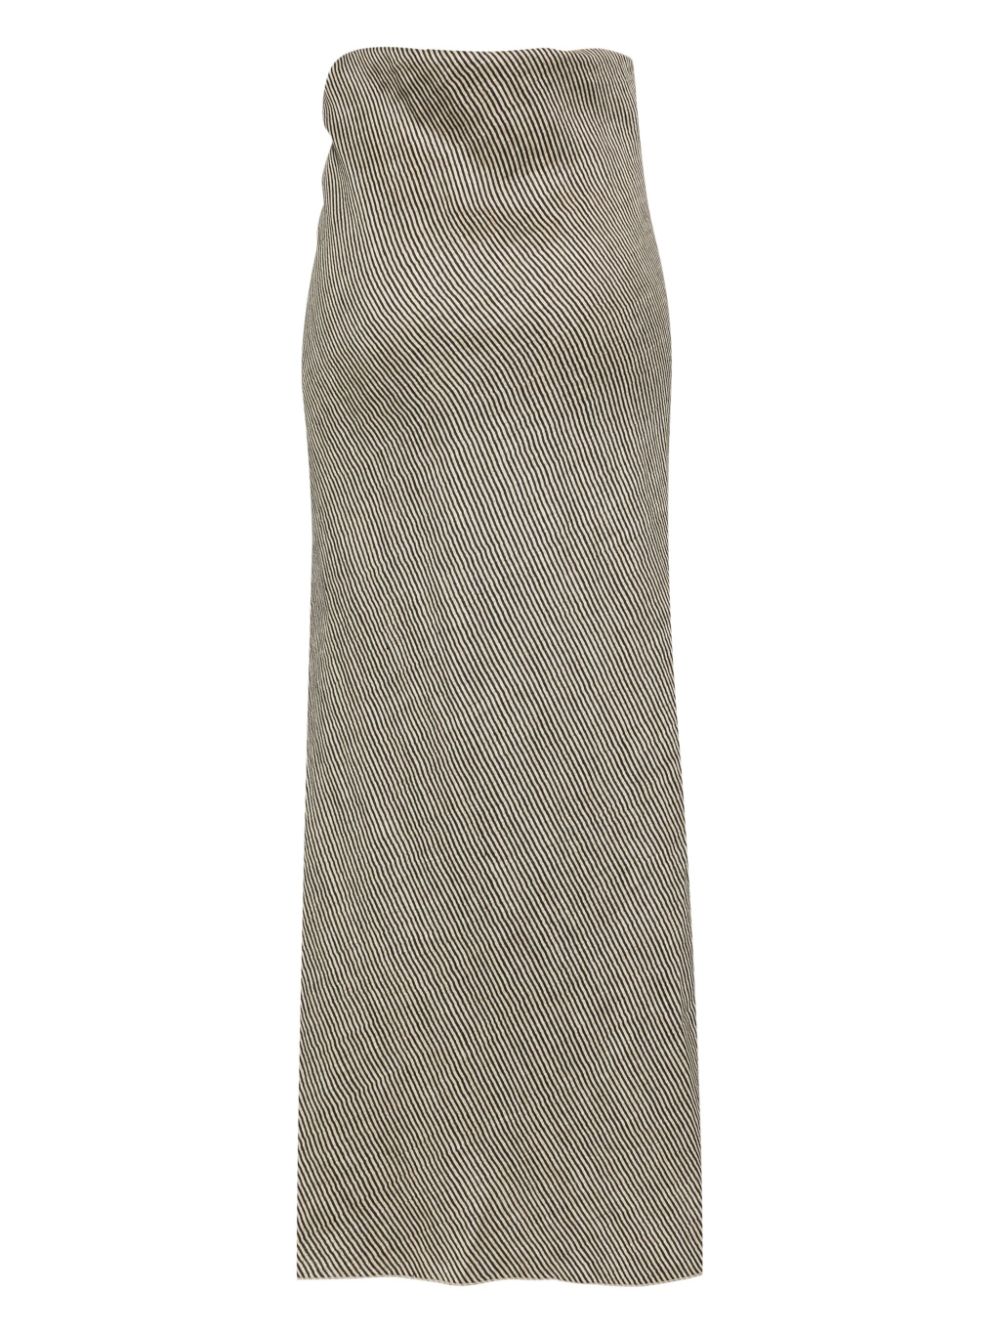 Alysi ALYSI- Striped Long Skirt